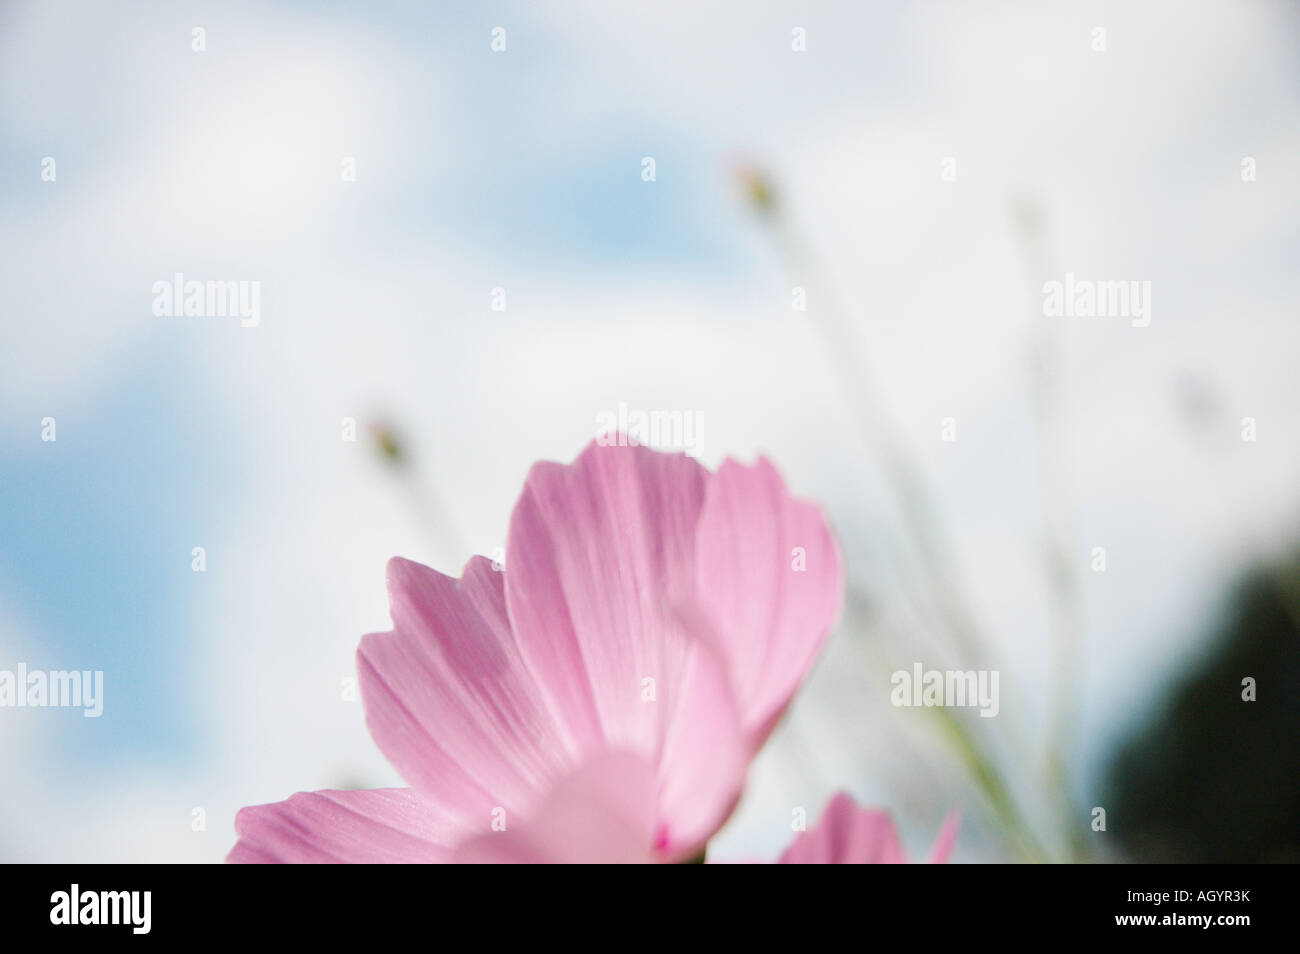 Prato Pascolo wiese romantico romantisch fioritura fioritura blühend abloom Blumenwiese prato di fiori rosa rosa Foto Stock